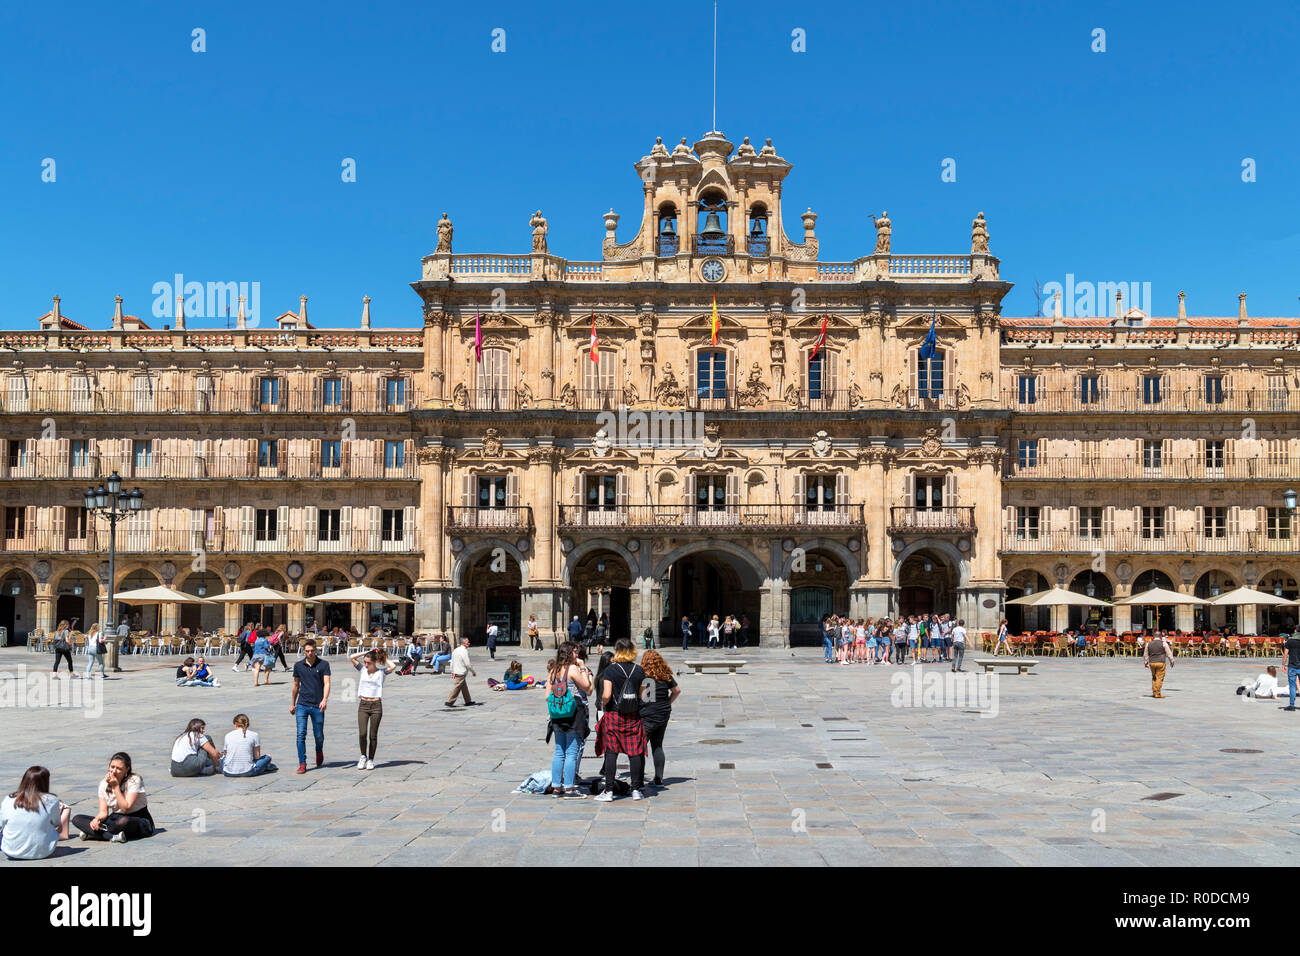 City Hall (Ayuntamiento), Plaza Mayor, Salamanca, Castilla y Leon, Spain Stock Photo